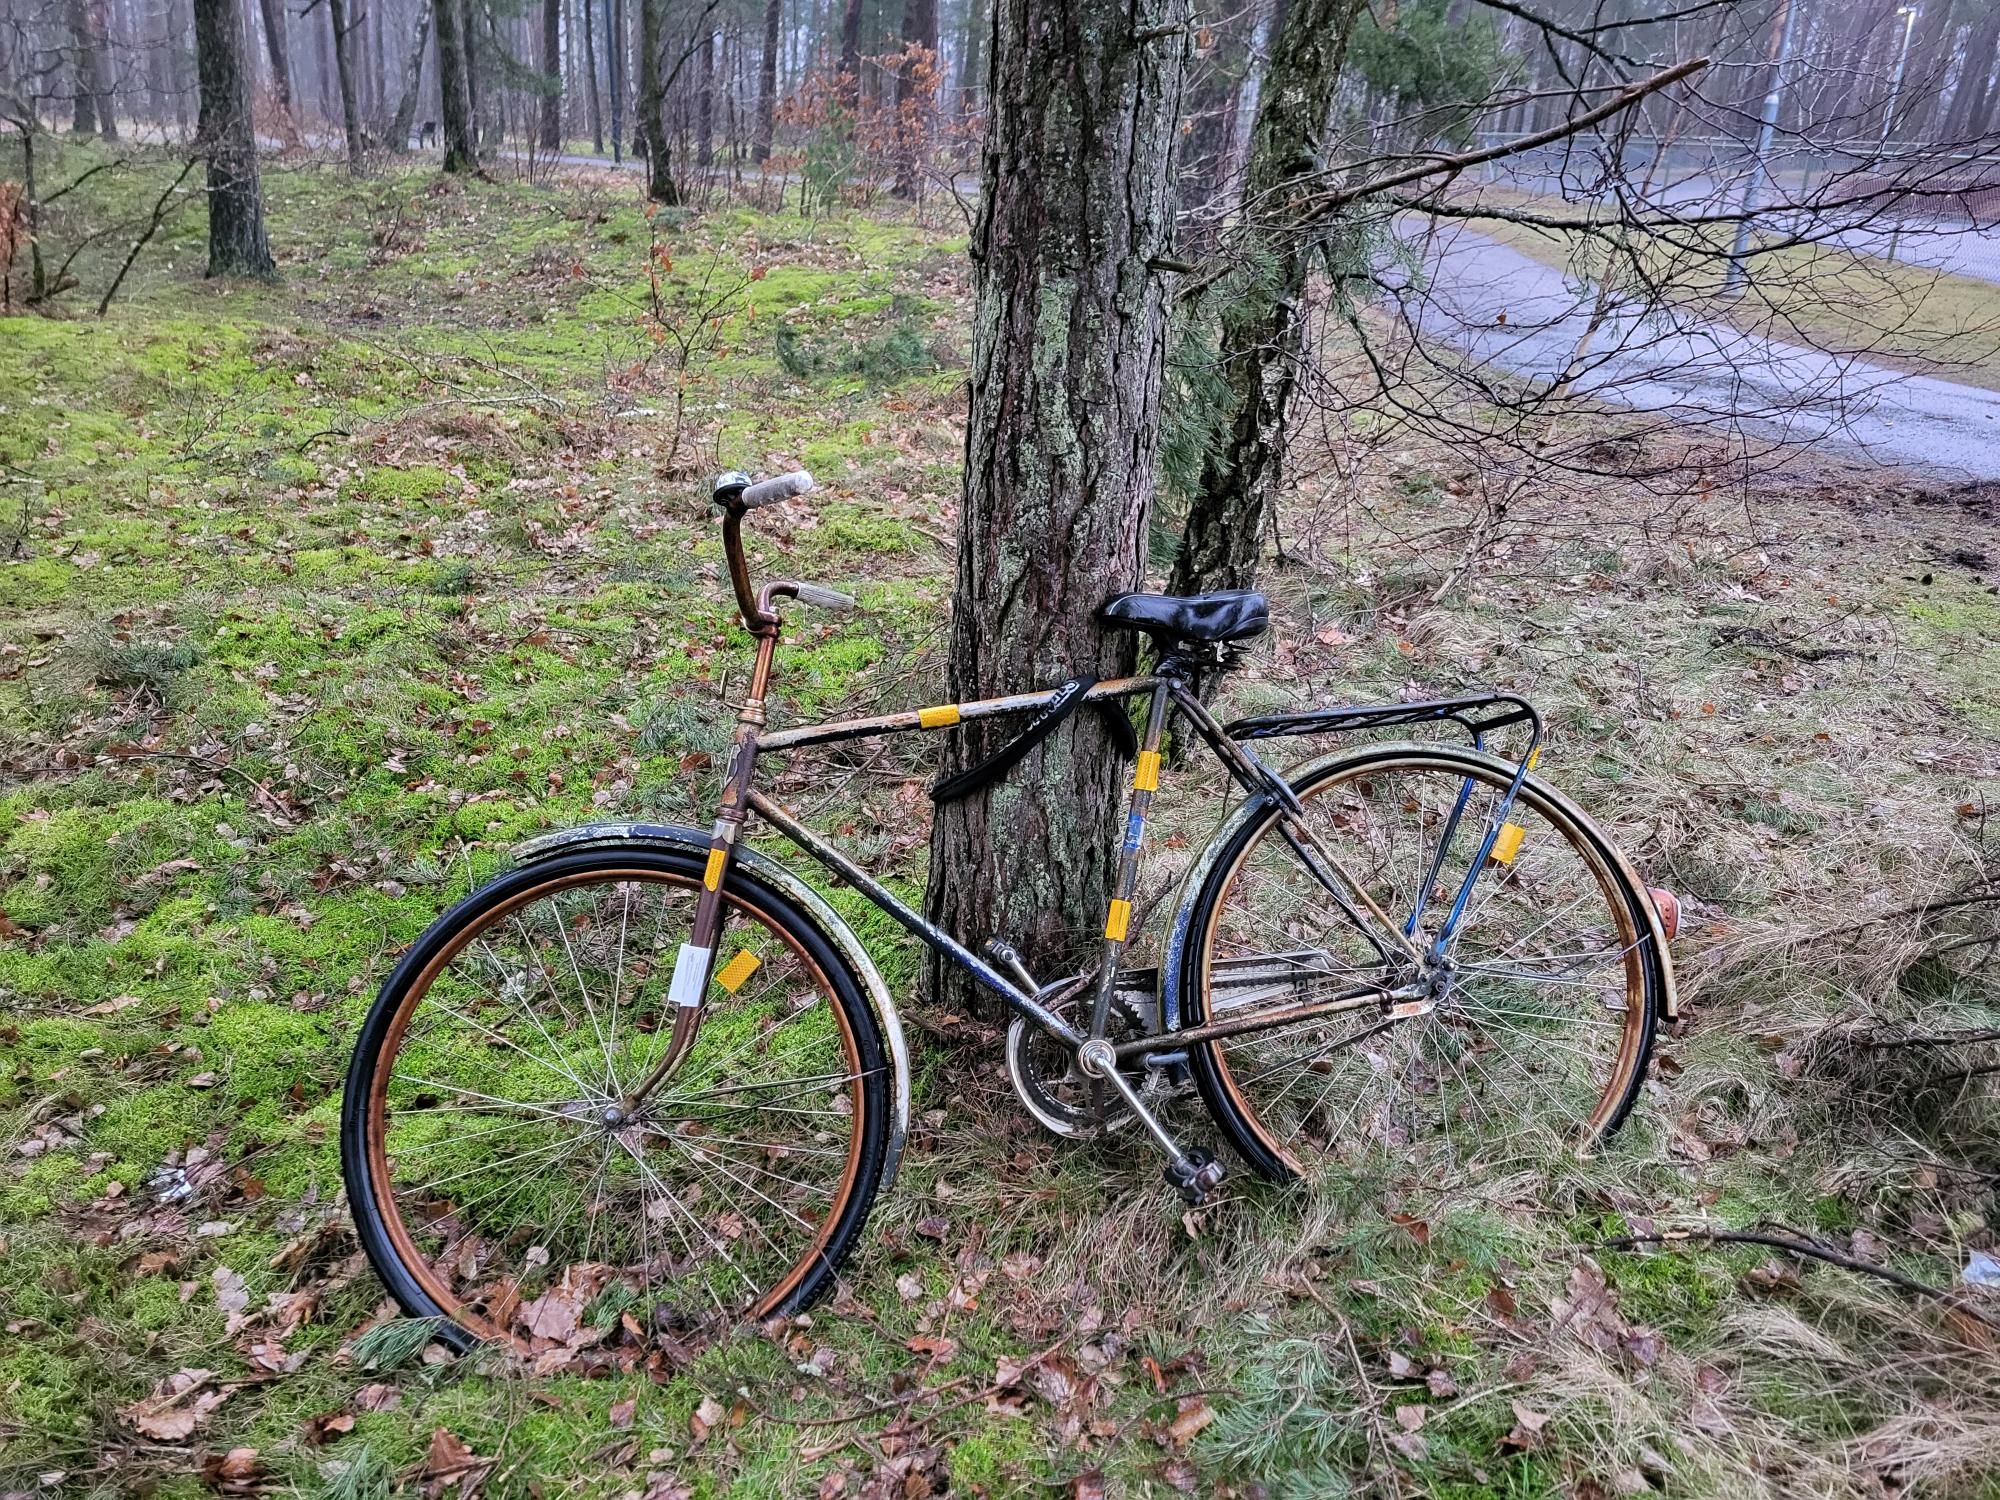 Övergiven cykel lutad mot träd